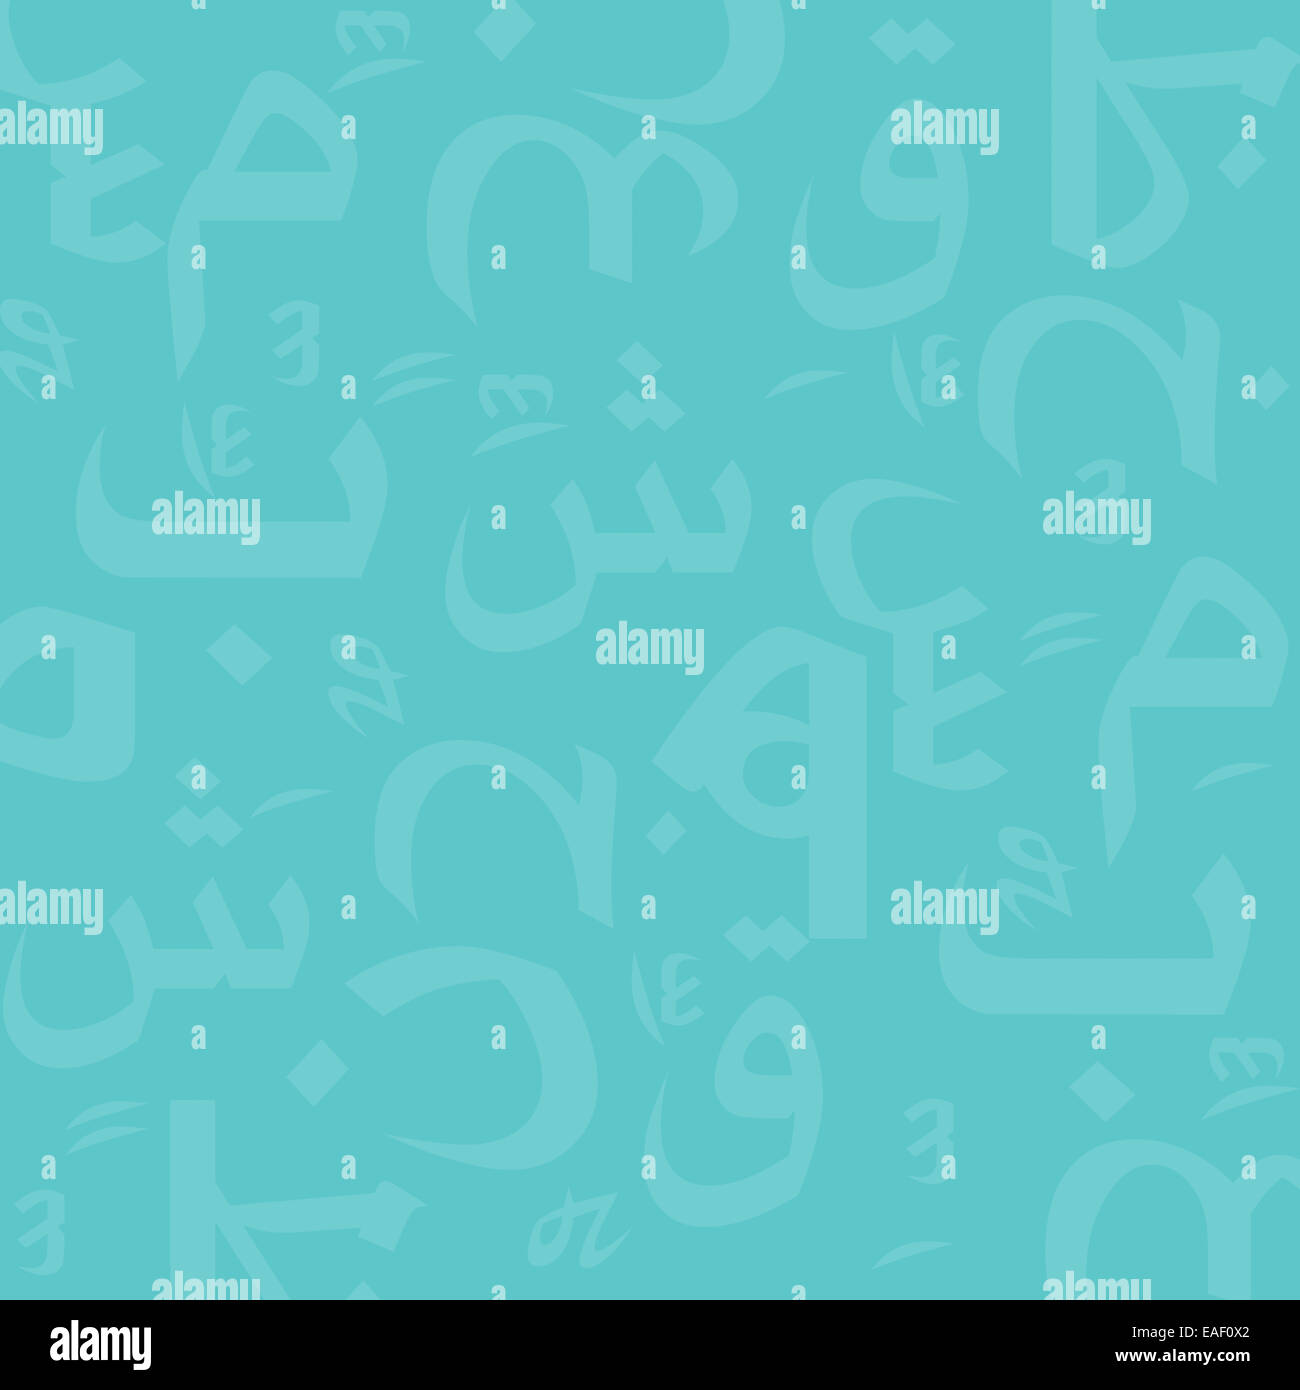 Arabische Buchstaben nahtlose Muster Stockfoto